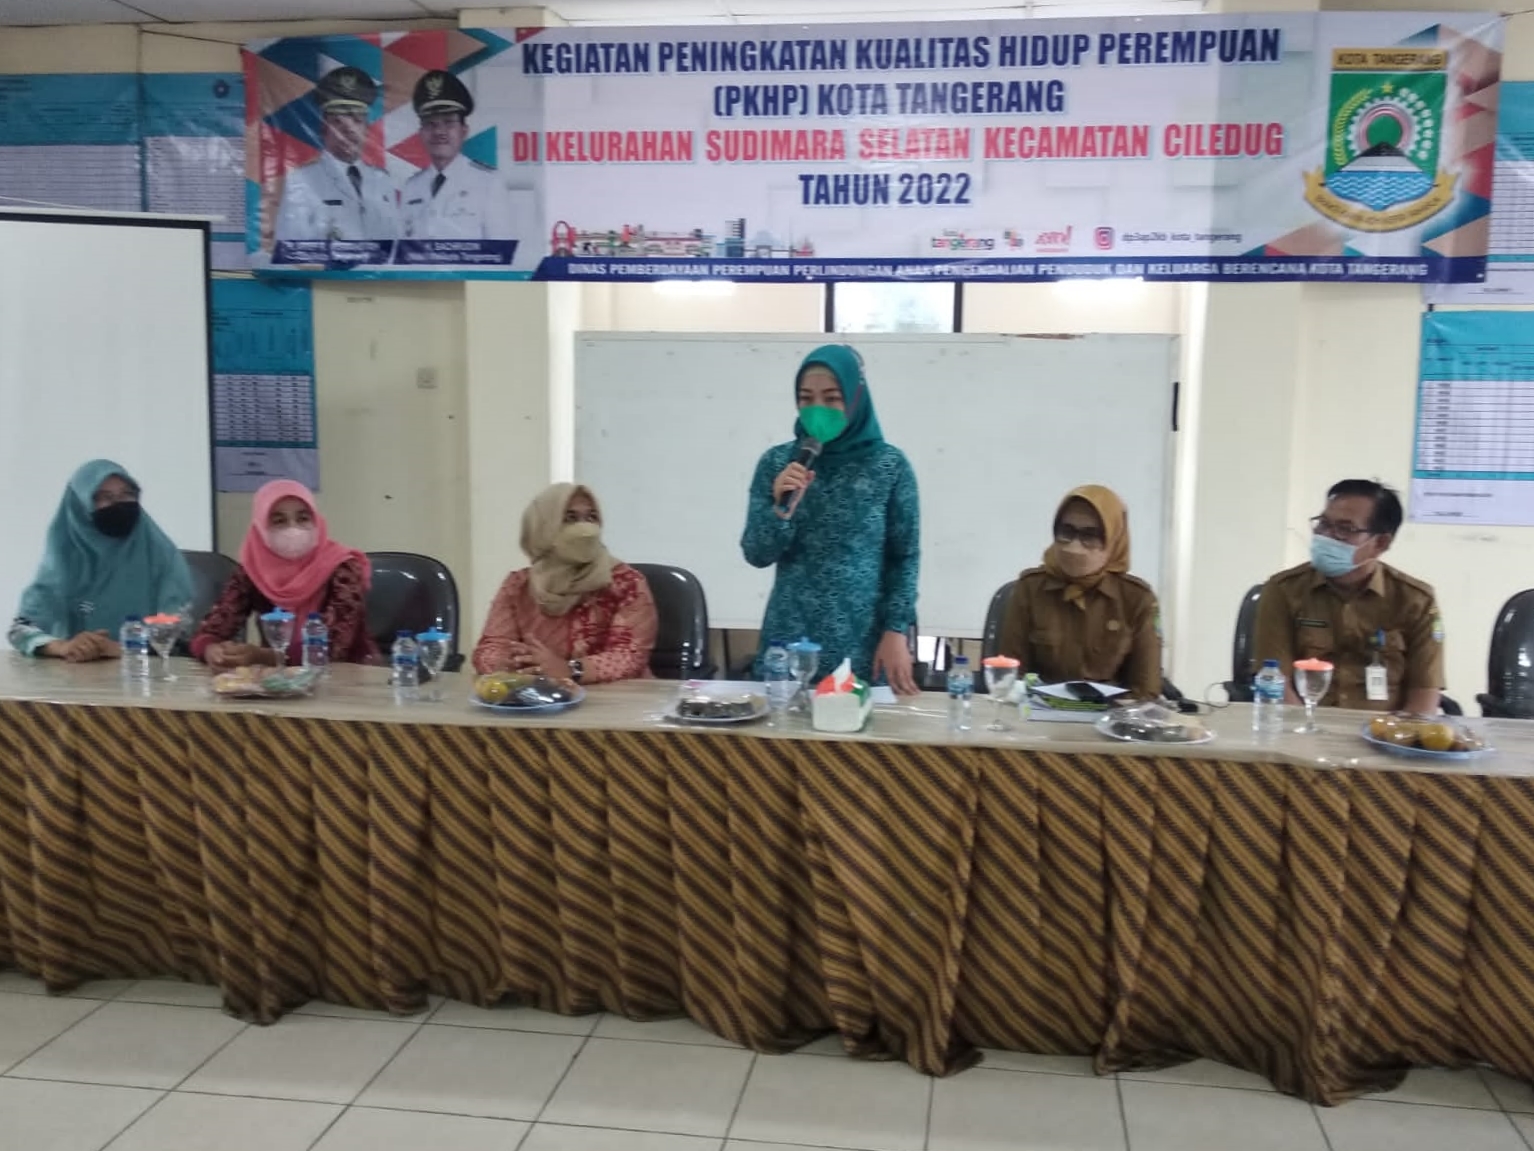 Kegiatan Peningkatan Kualitas Hidup Perempuan (PKHP) Kota Tangerang di Aula Kelurahan Sudimara Selatan